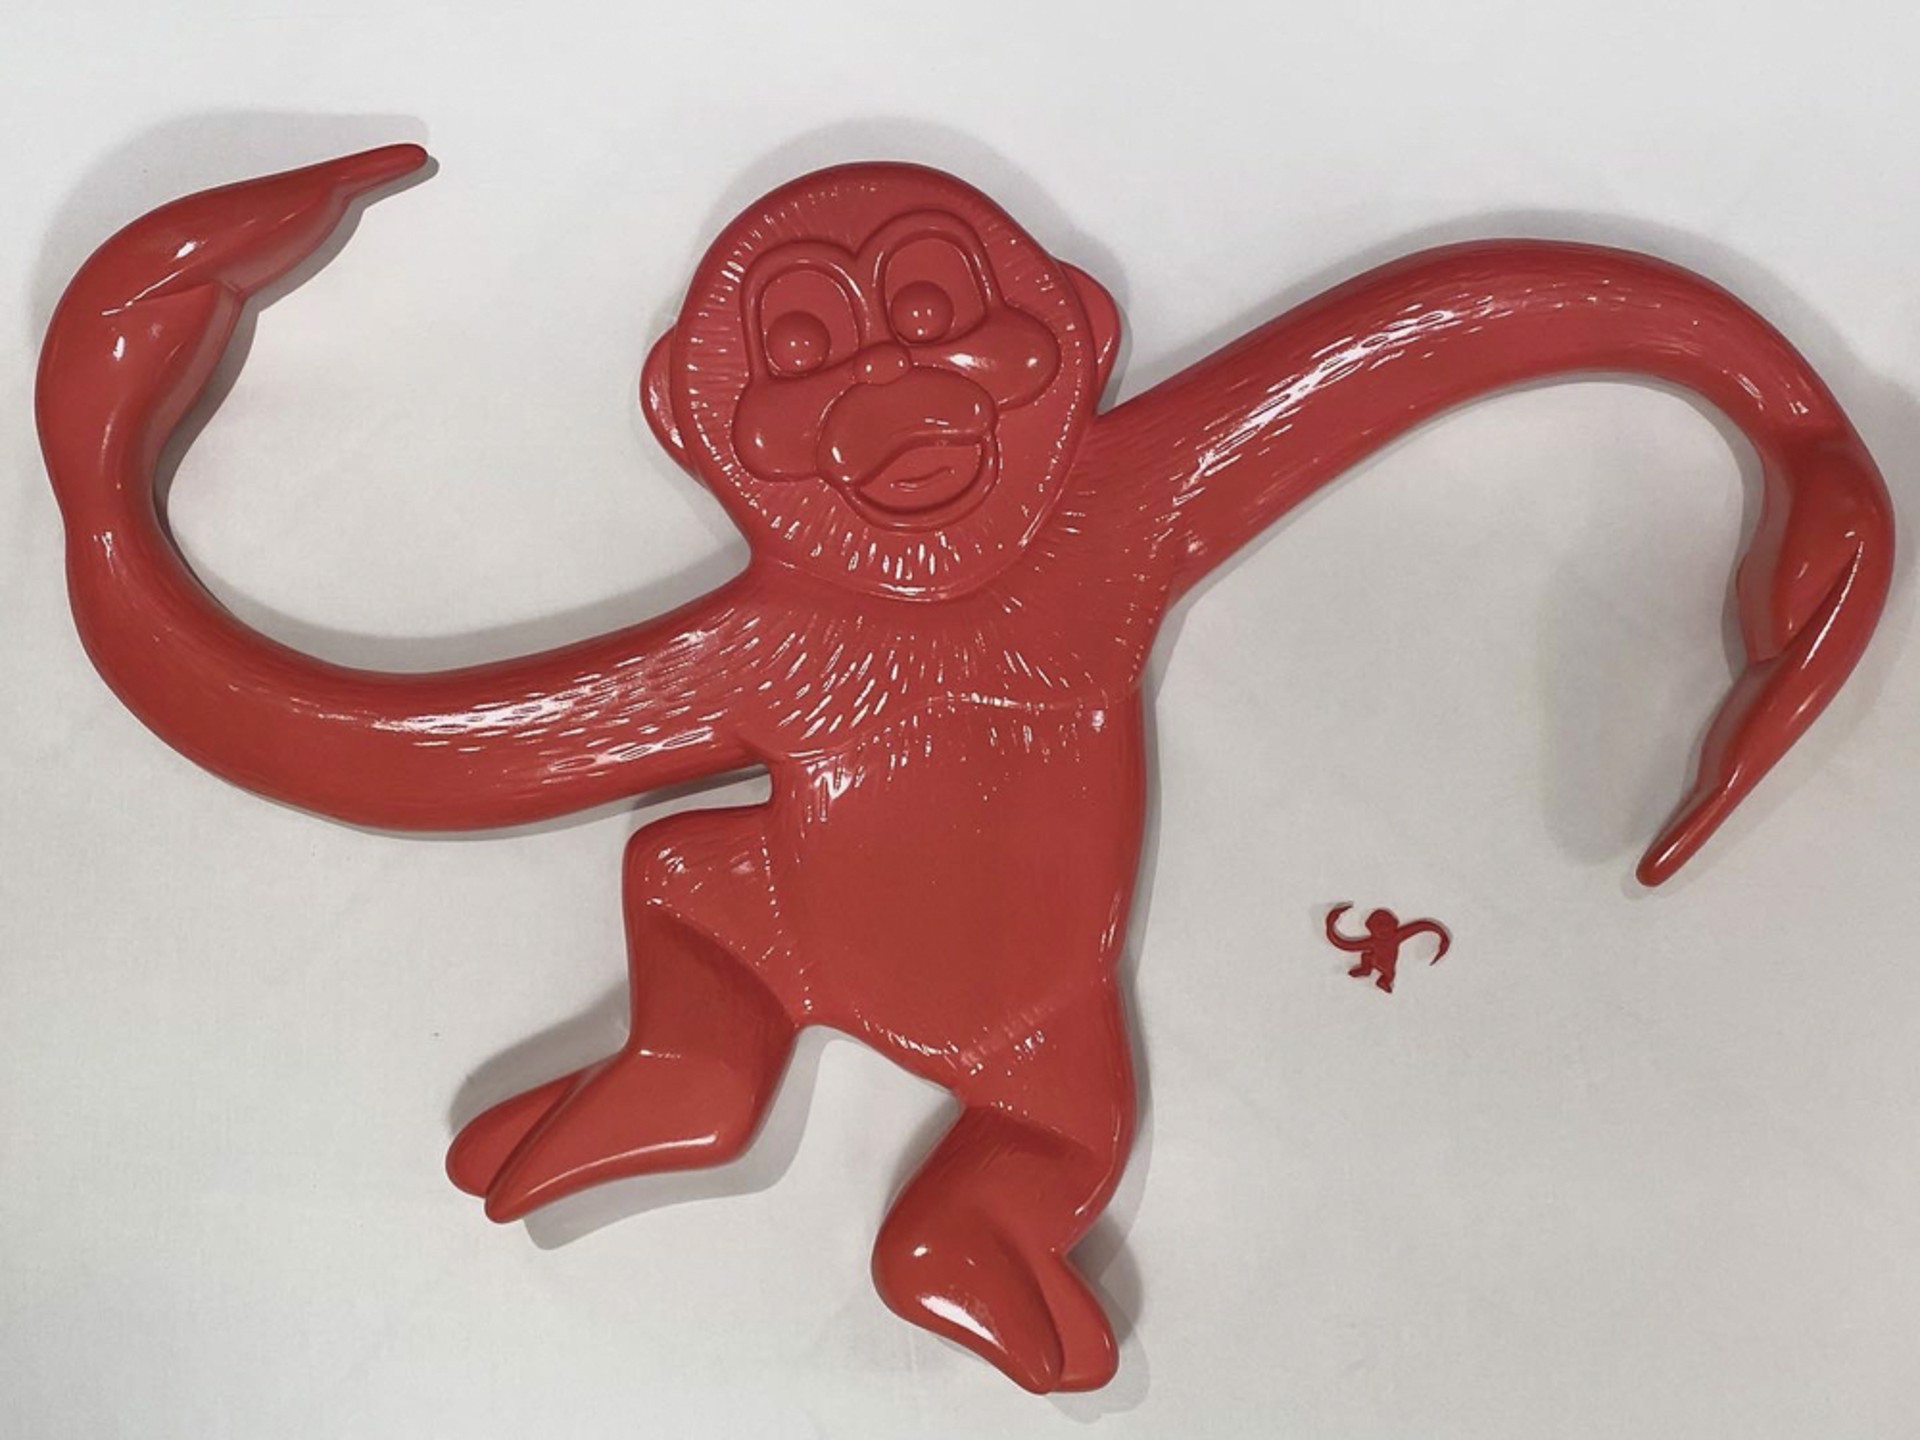 Monkey by Sam Lasseter